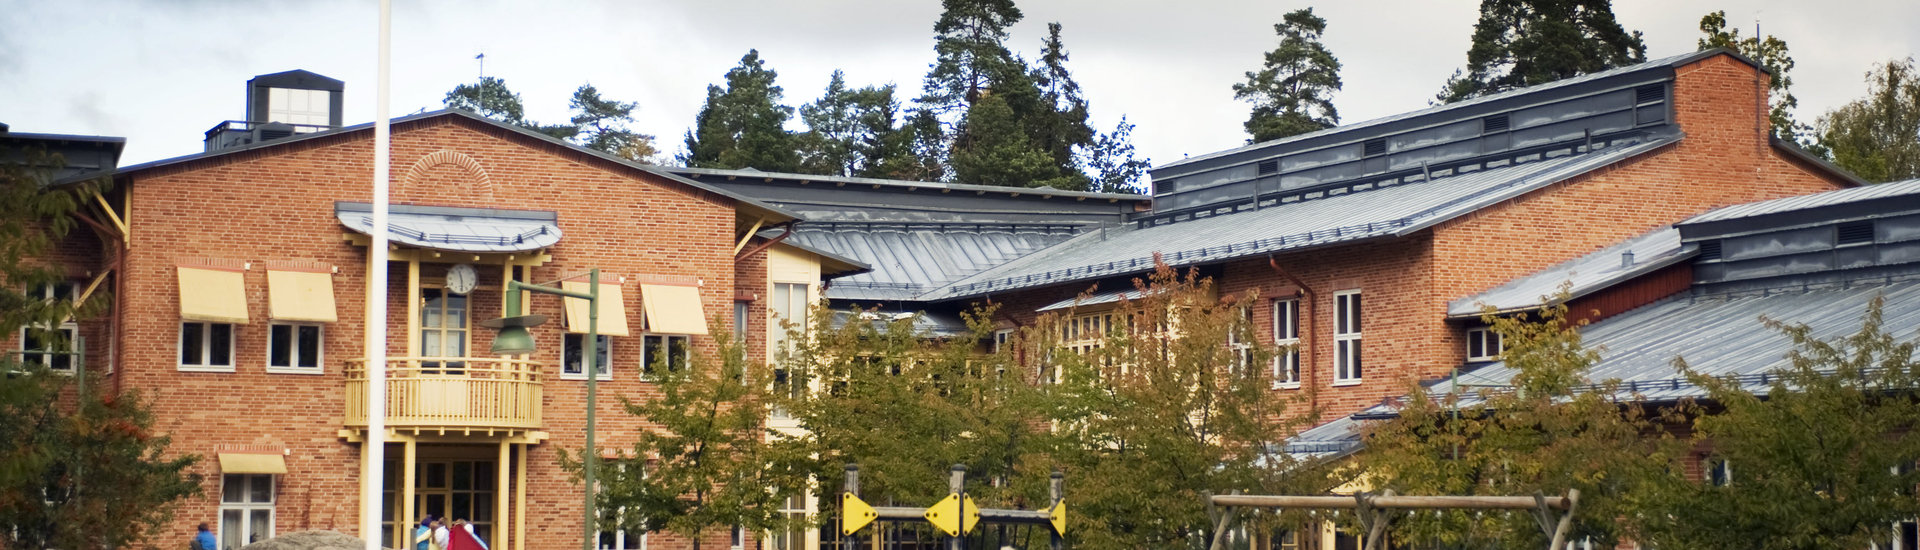 Strandskolan in Tyresö, Sweden.